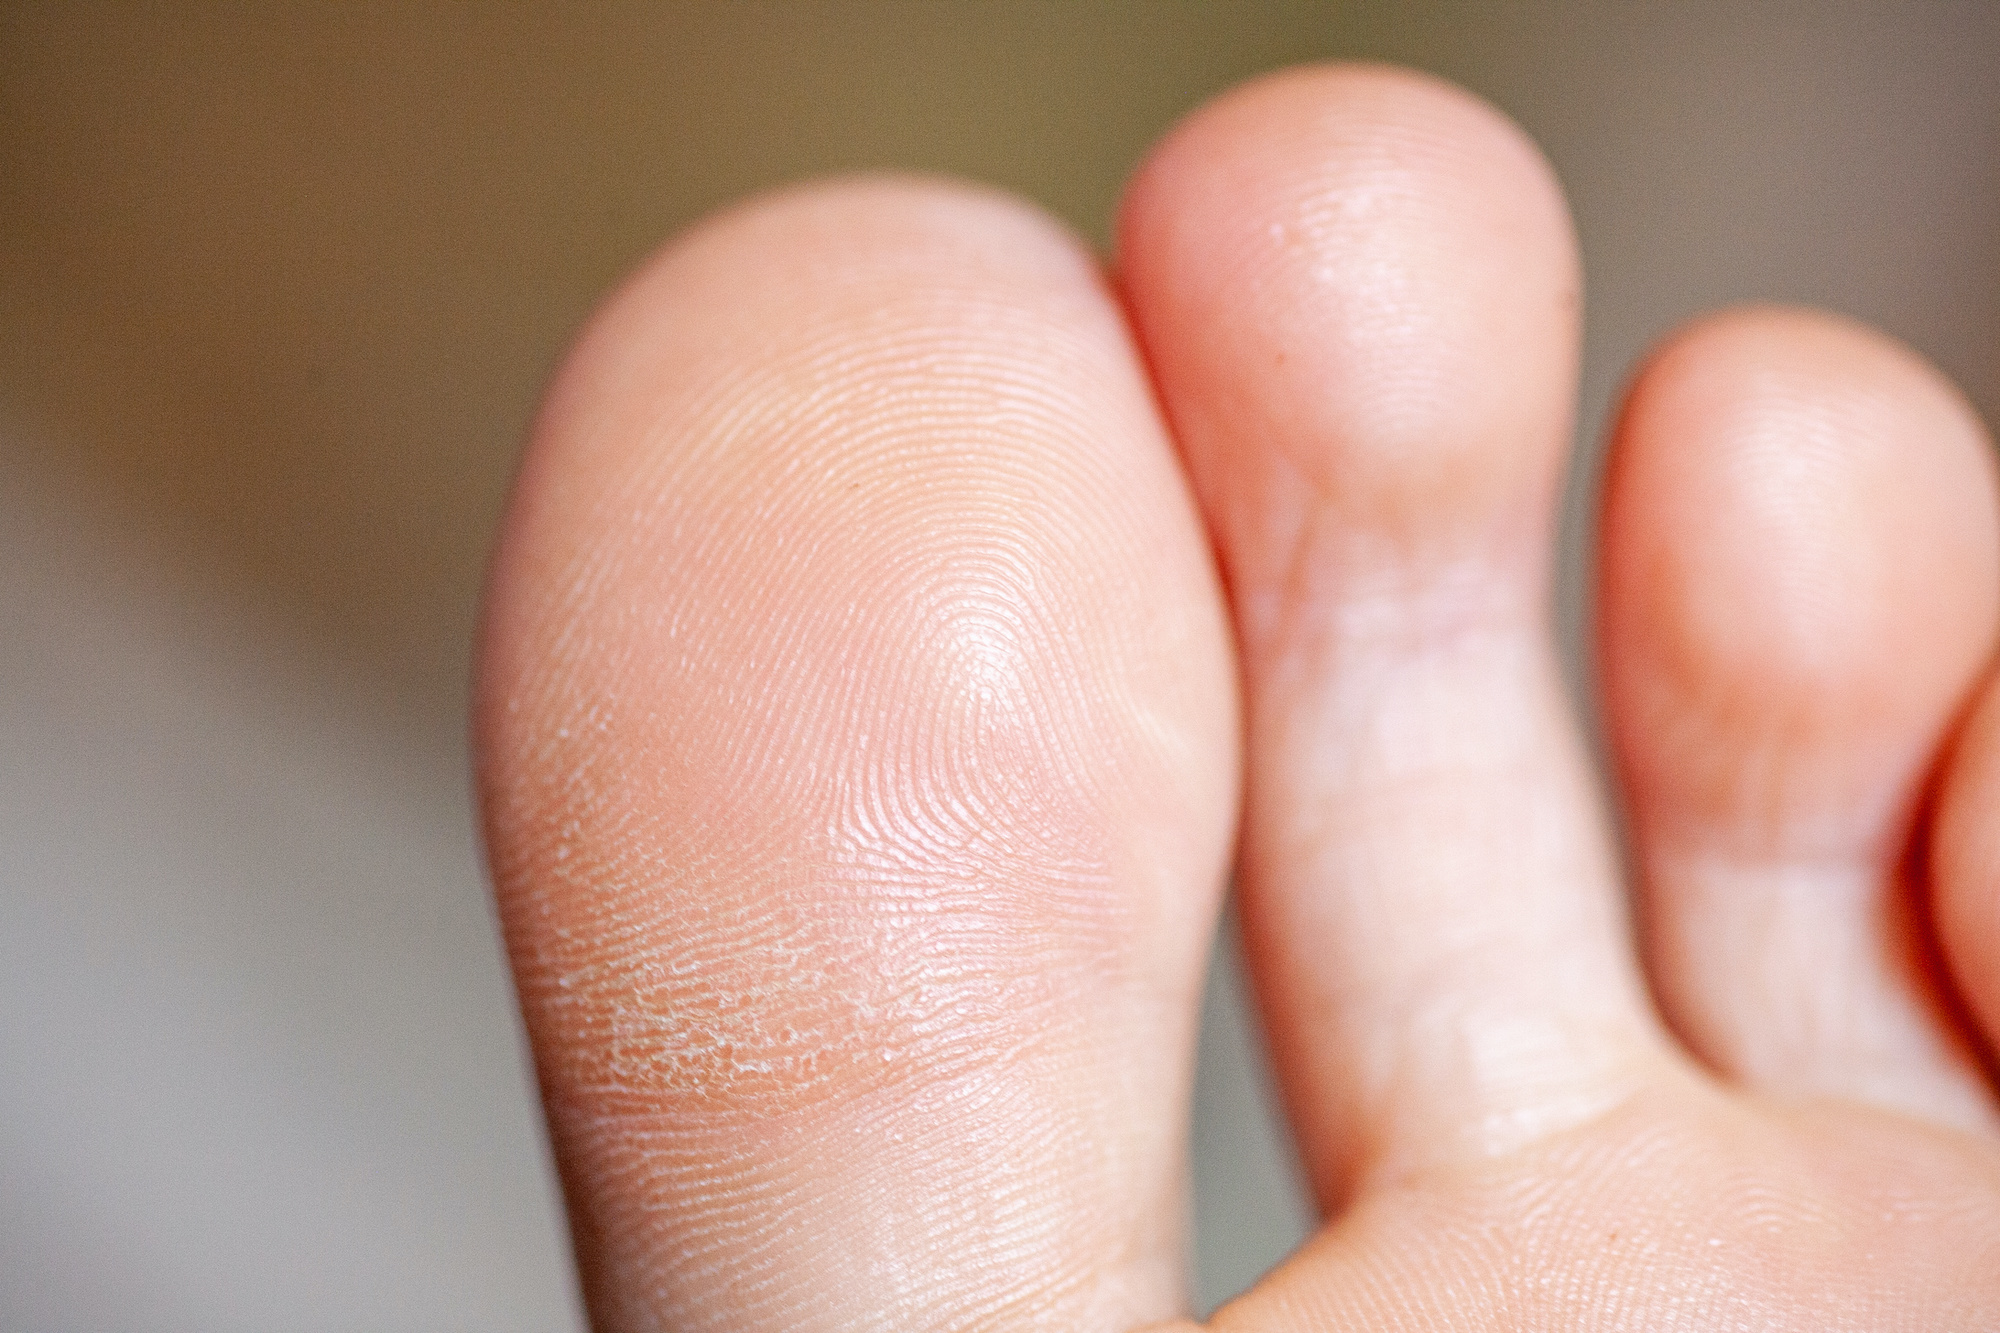 Comme les empreintes digitales de la main, celles des pieds sont uniques. ©&nbsp;mironovm, Adobe Stock